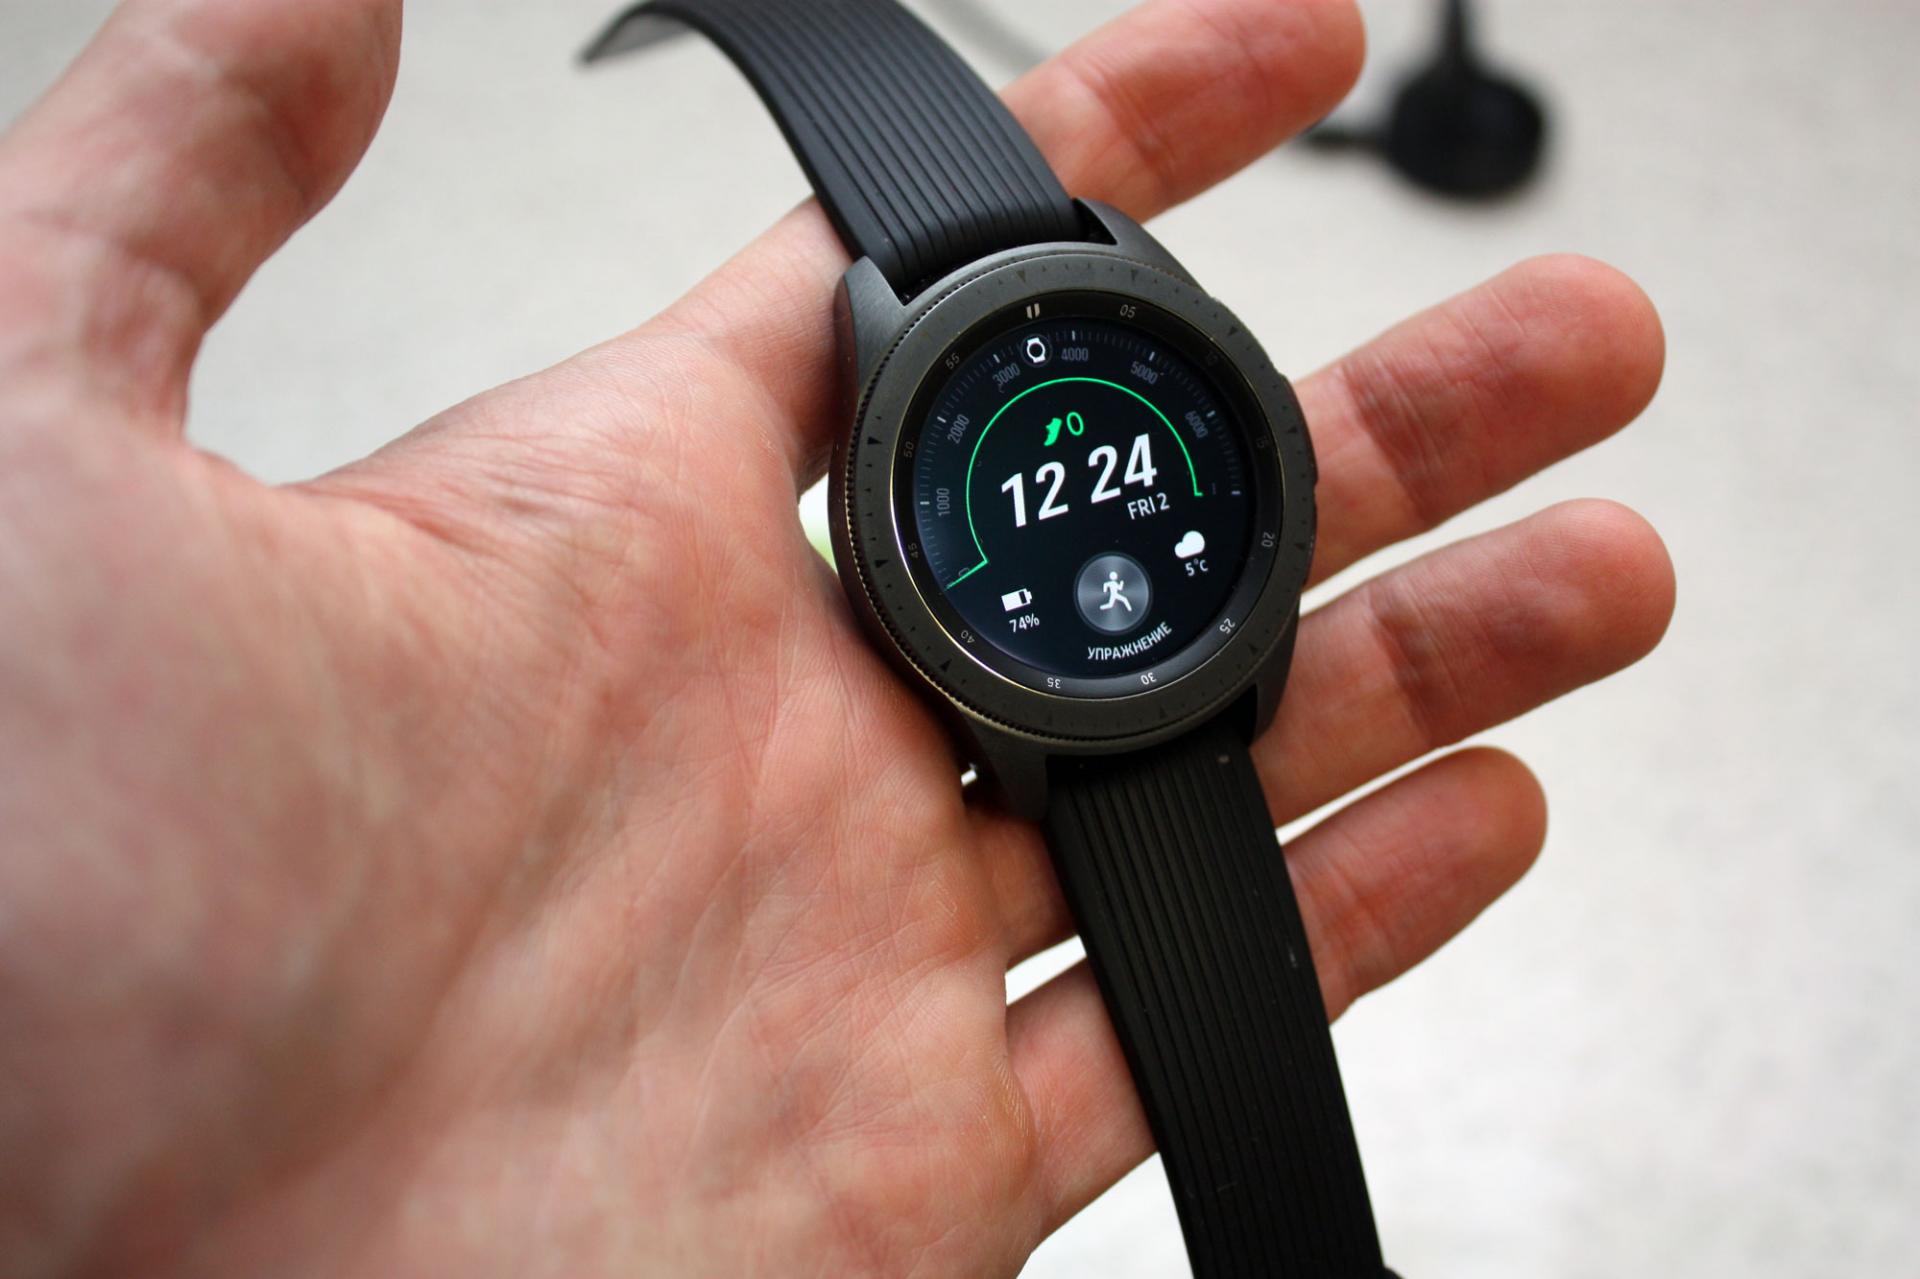 Samsung Galaxy Watch 42мм Купить